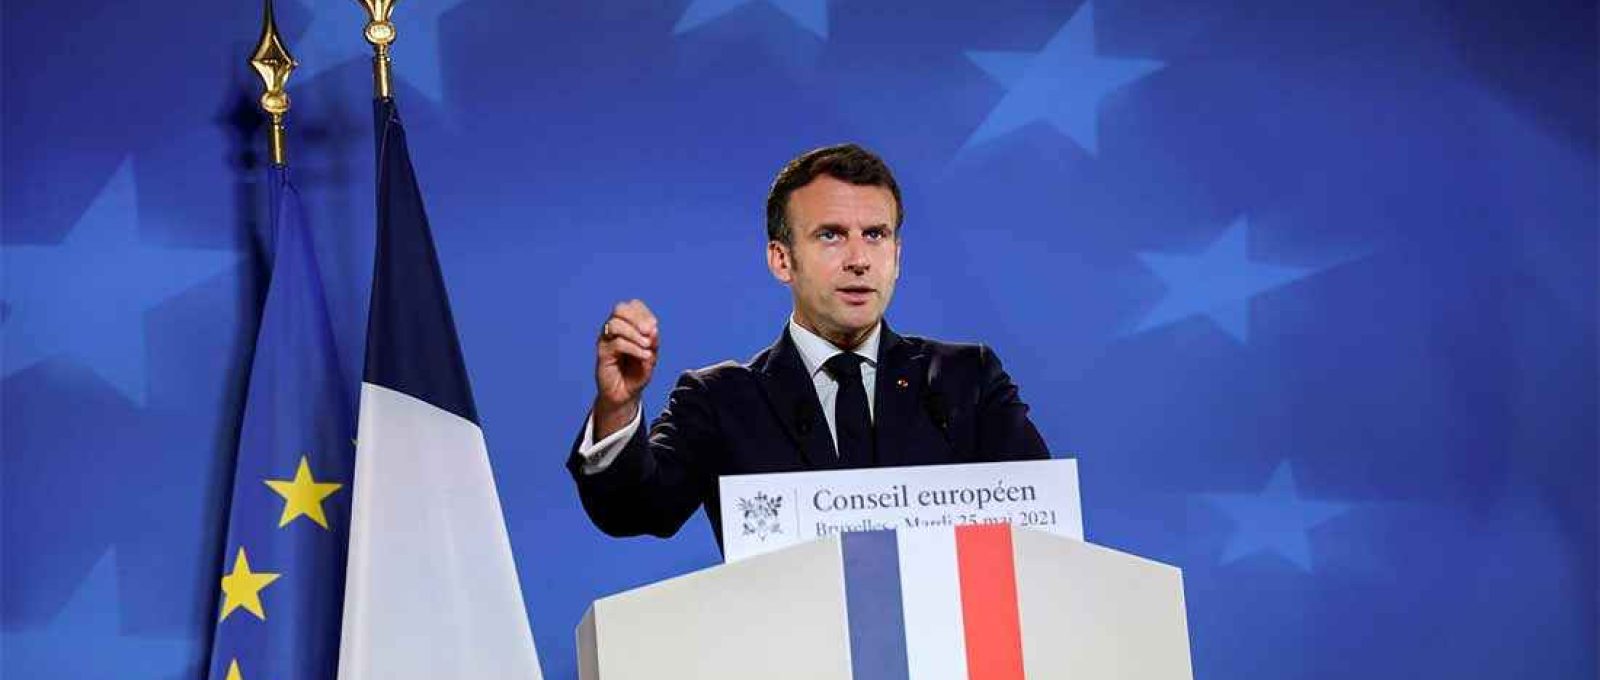 O presidente francês Emmanuel Macron em coletiva de imprensa durante cúpula da UE em Bruxelas, Bélgica, em 25 de maio de 2021 (Foto: John Thys/Reuters).